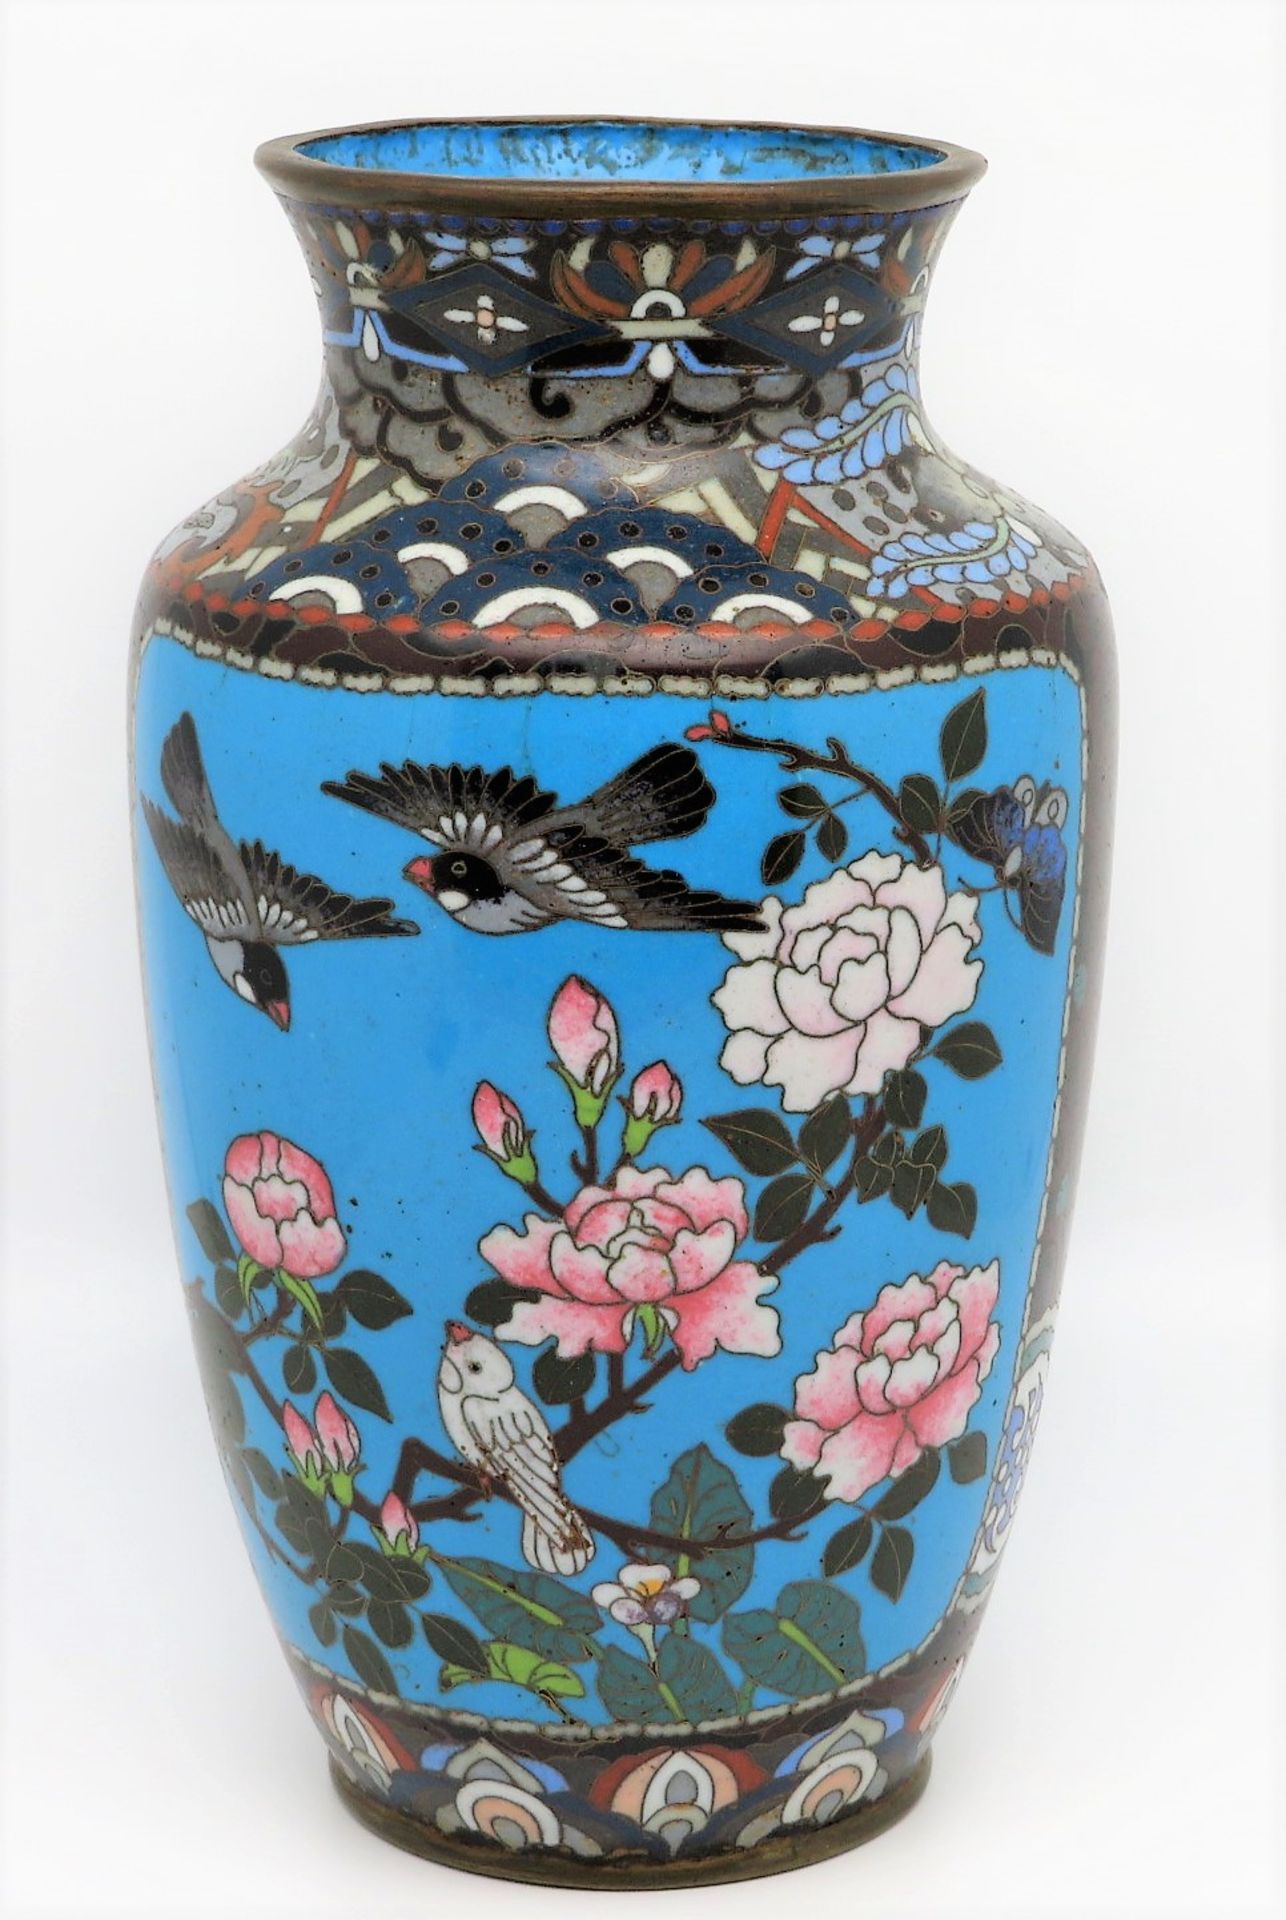 Cloisonné Vase, Japan, Meiji Periode, 1868 - 1912, farbiger Zellenschmelz mit Dekor von Vögeln, ein - Bild 2 aus 3